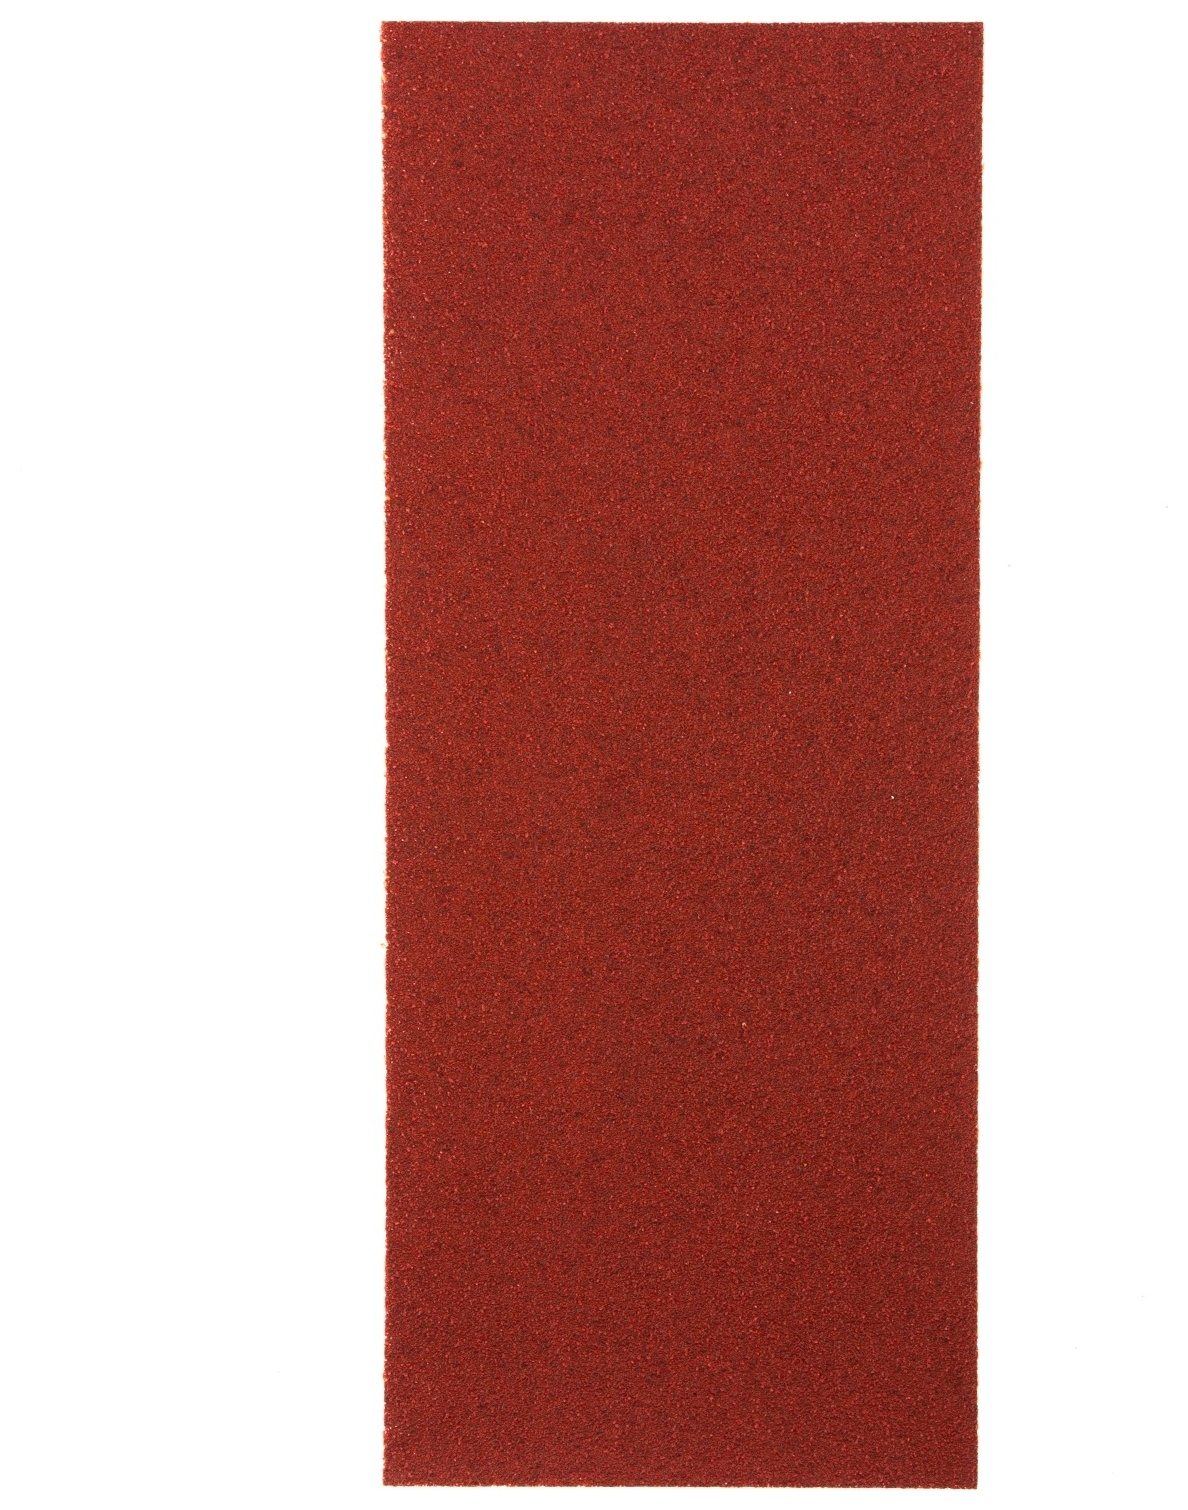 Шлифлист на бумажной основе, P 60, 115 х 280 мм, 5 шт, водостойкий